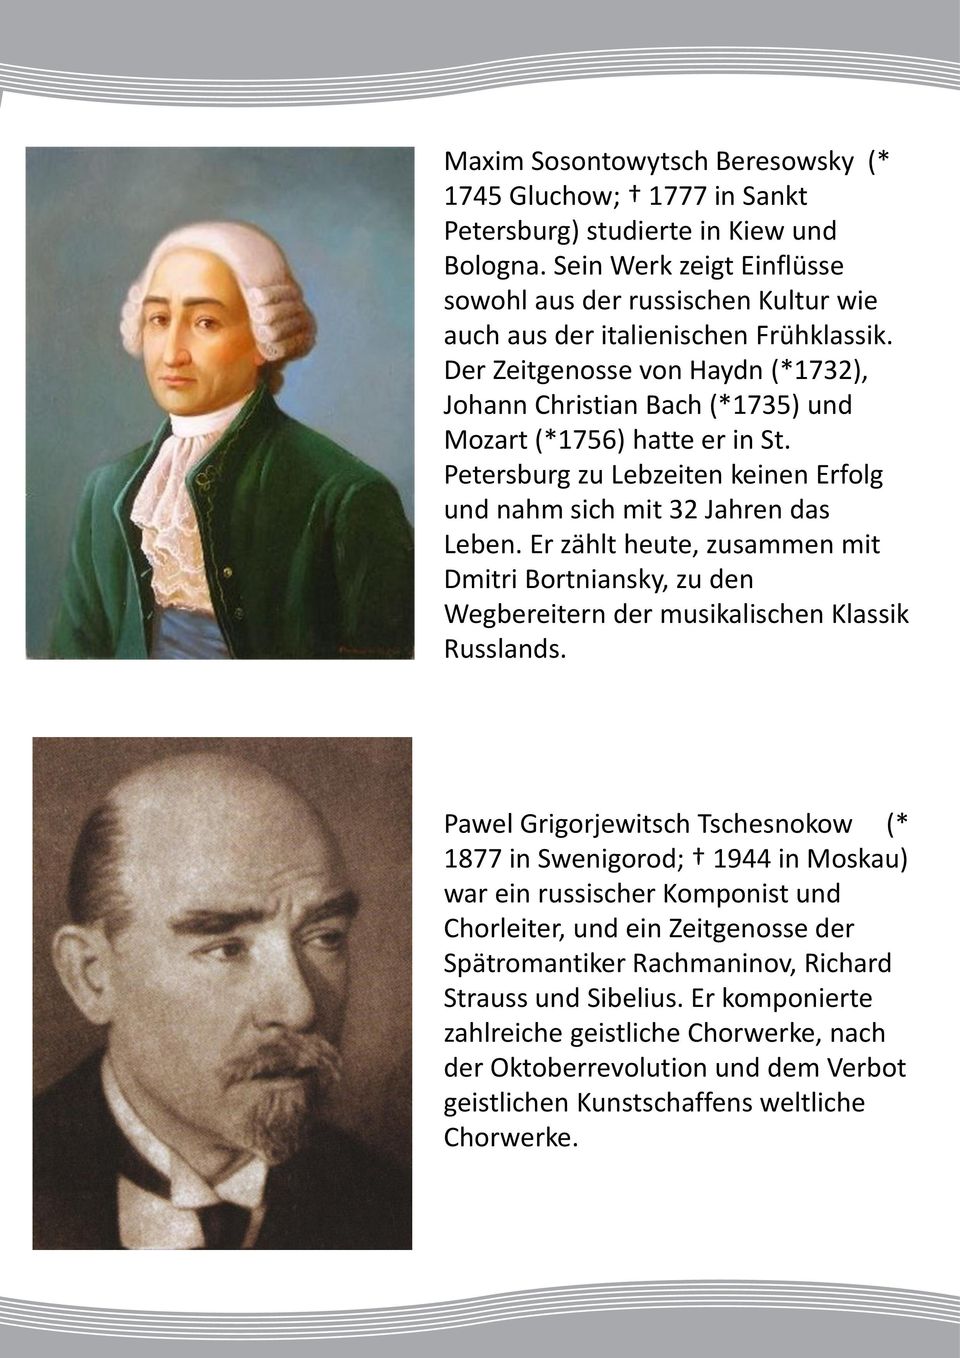 Der Zeitgenosse von Haydn (*1732), Johann Christian Bach (*1735) und Mozart (*1756) hatte er in St. Petersburg zu Lebzeiten keinen Erfolg und nahm sich mit 32 Jahren das Leben.